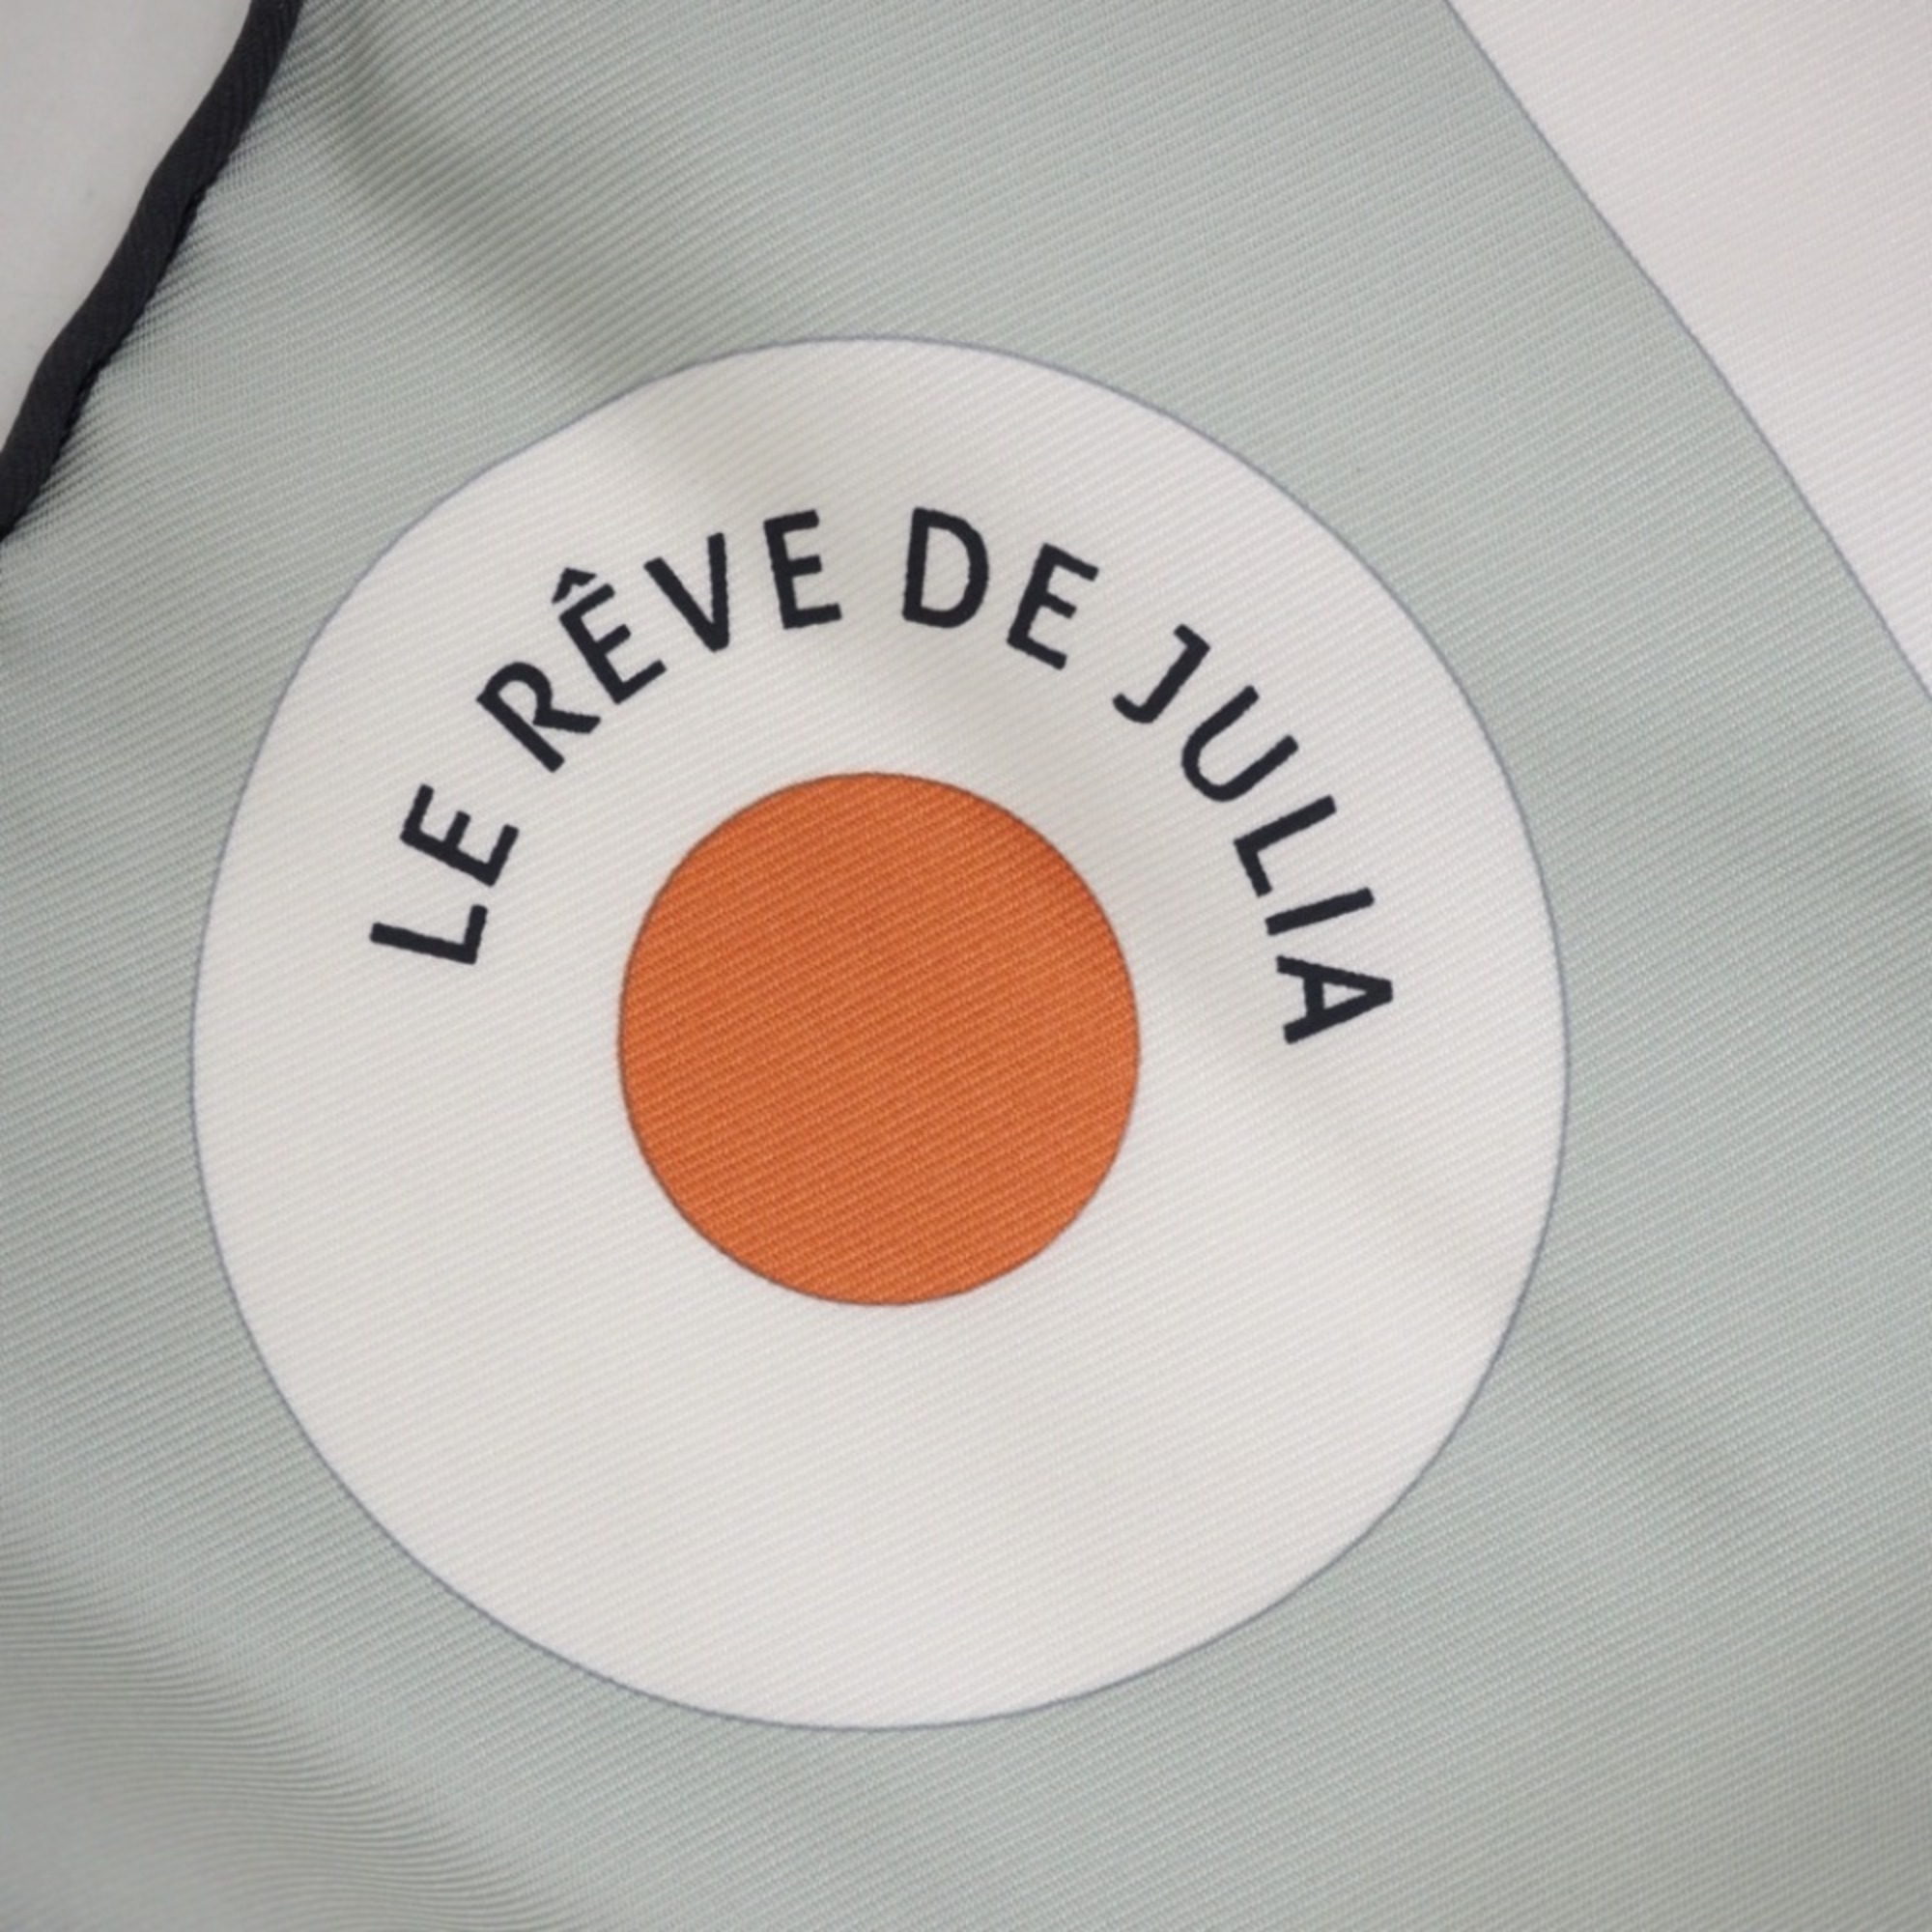 HERMES/Hermes Carre 90 Le Reve de Julia Julia's Dream Scarf Multicolor Women's